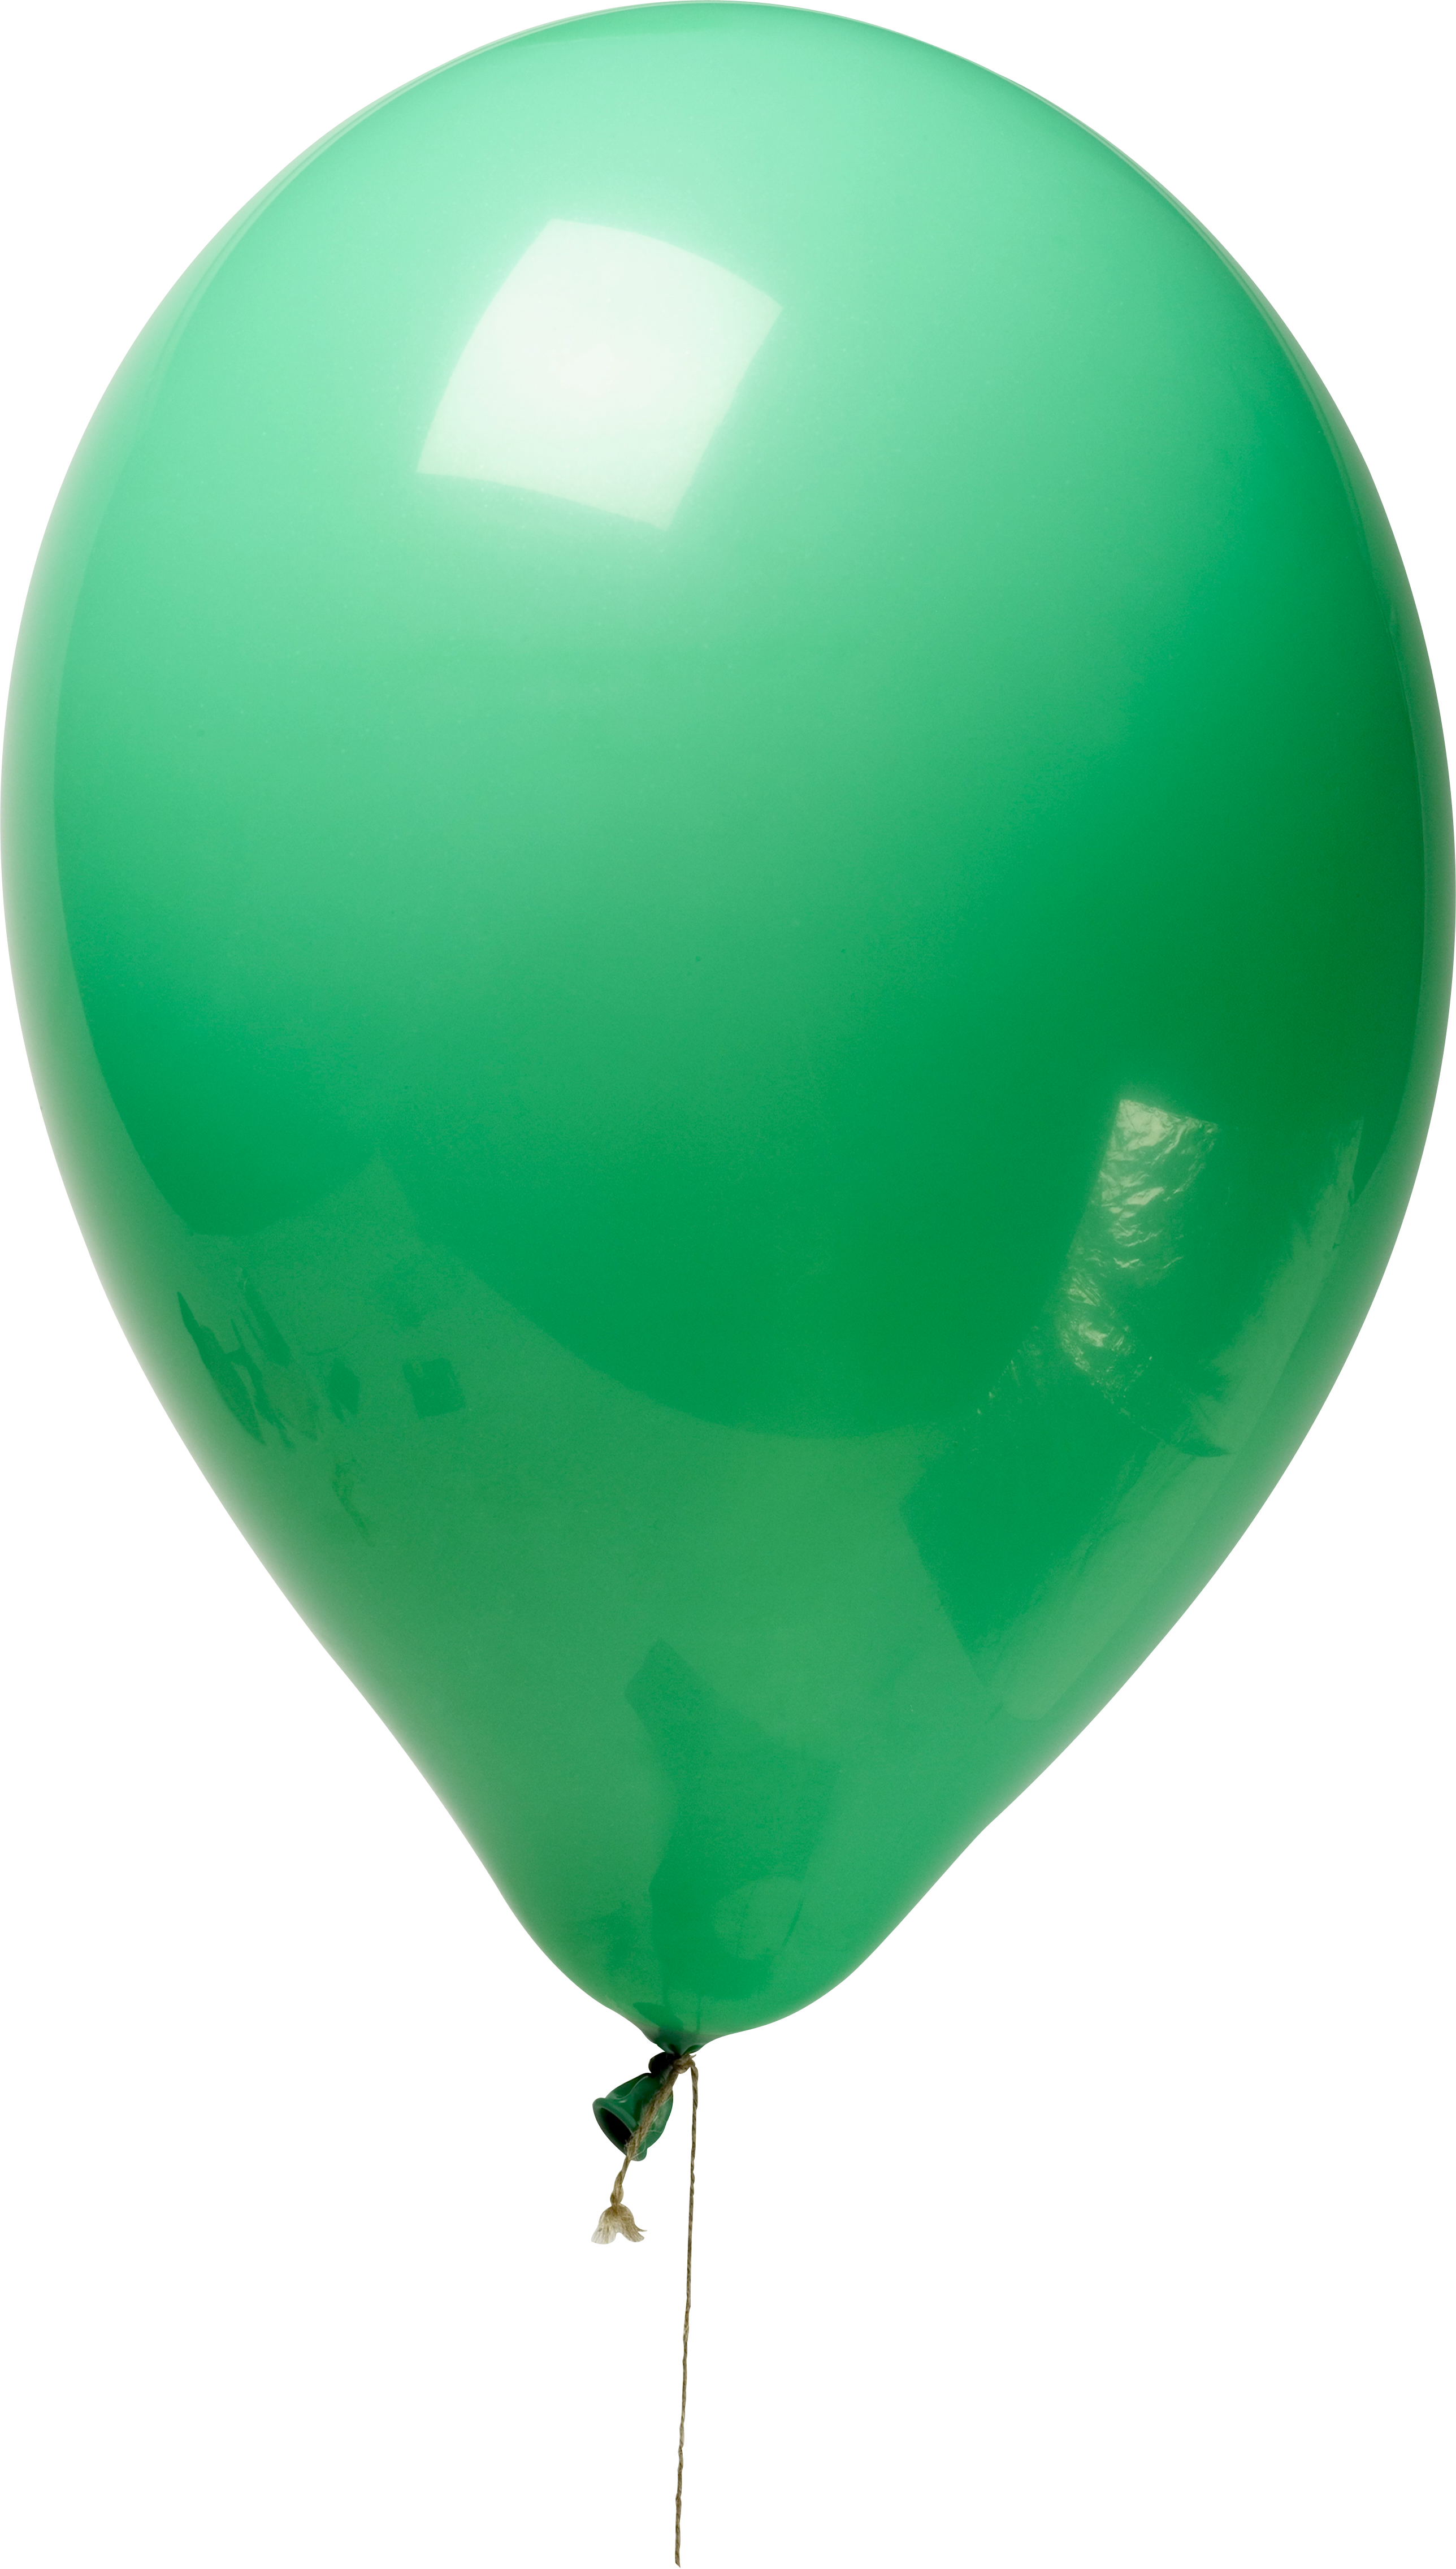 Green Balloon Png Image   Green Balloon Png Image